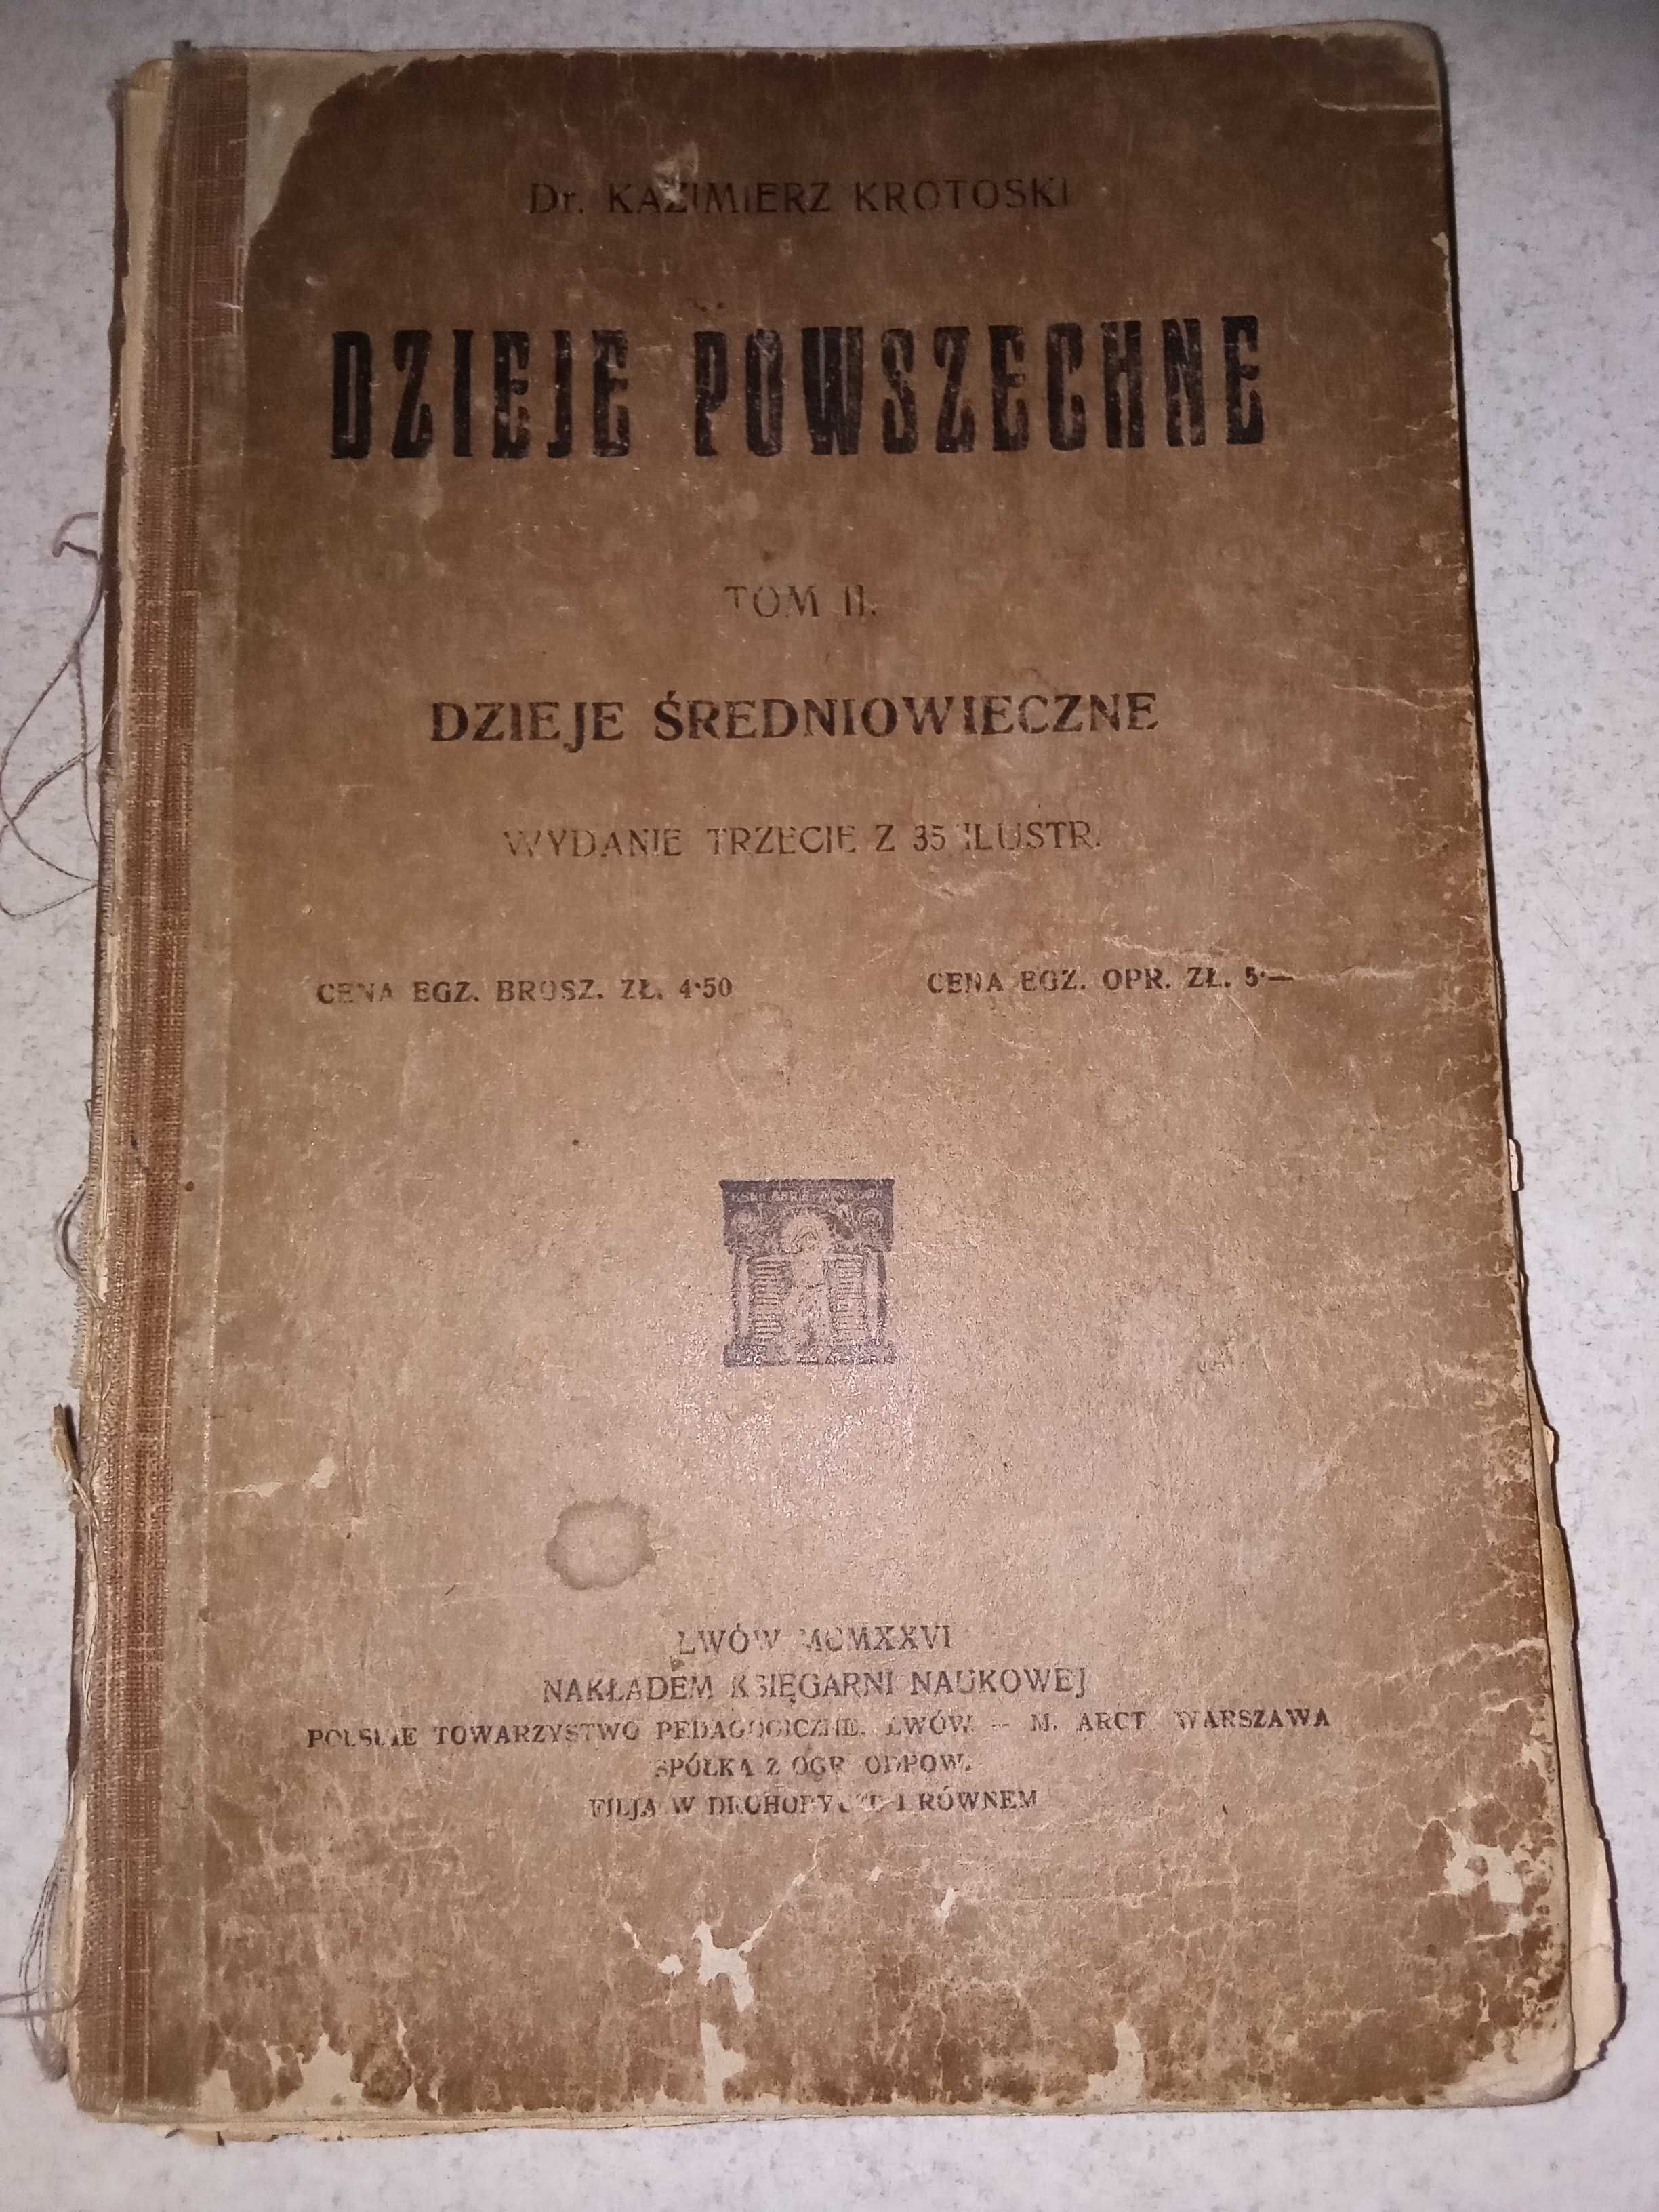 Kazimierz Krotoski, Dzieje powszechne, tom II, 1926 r.